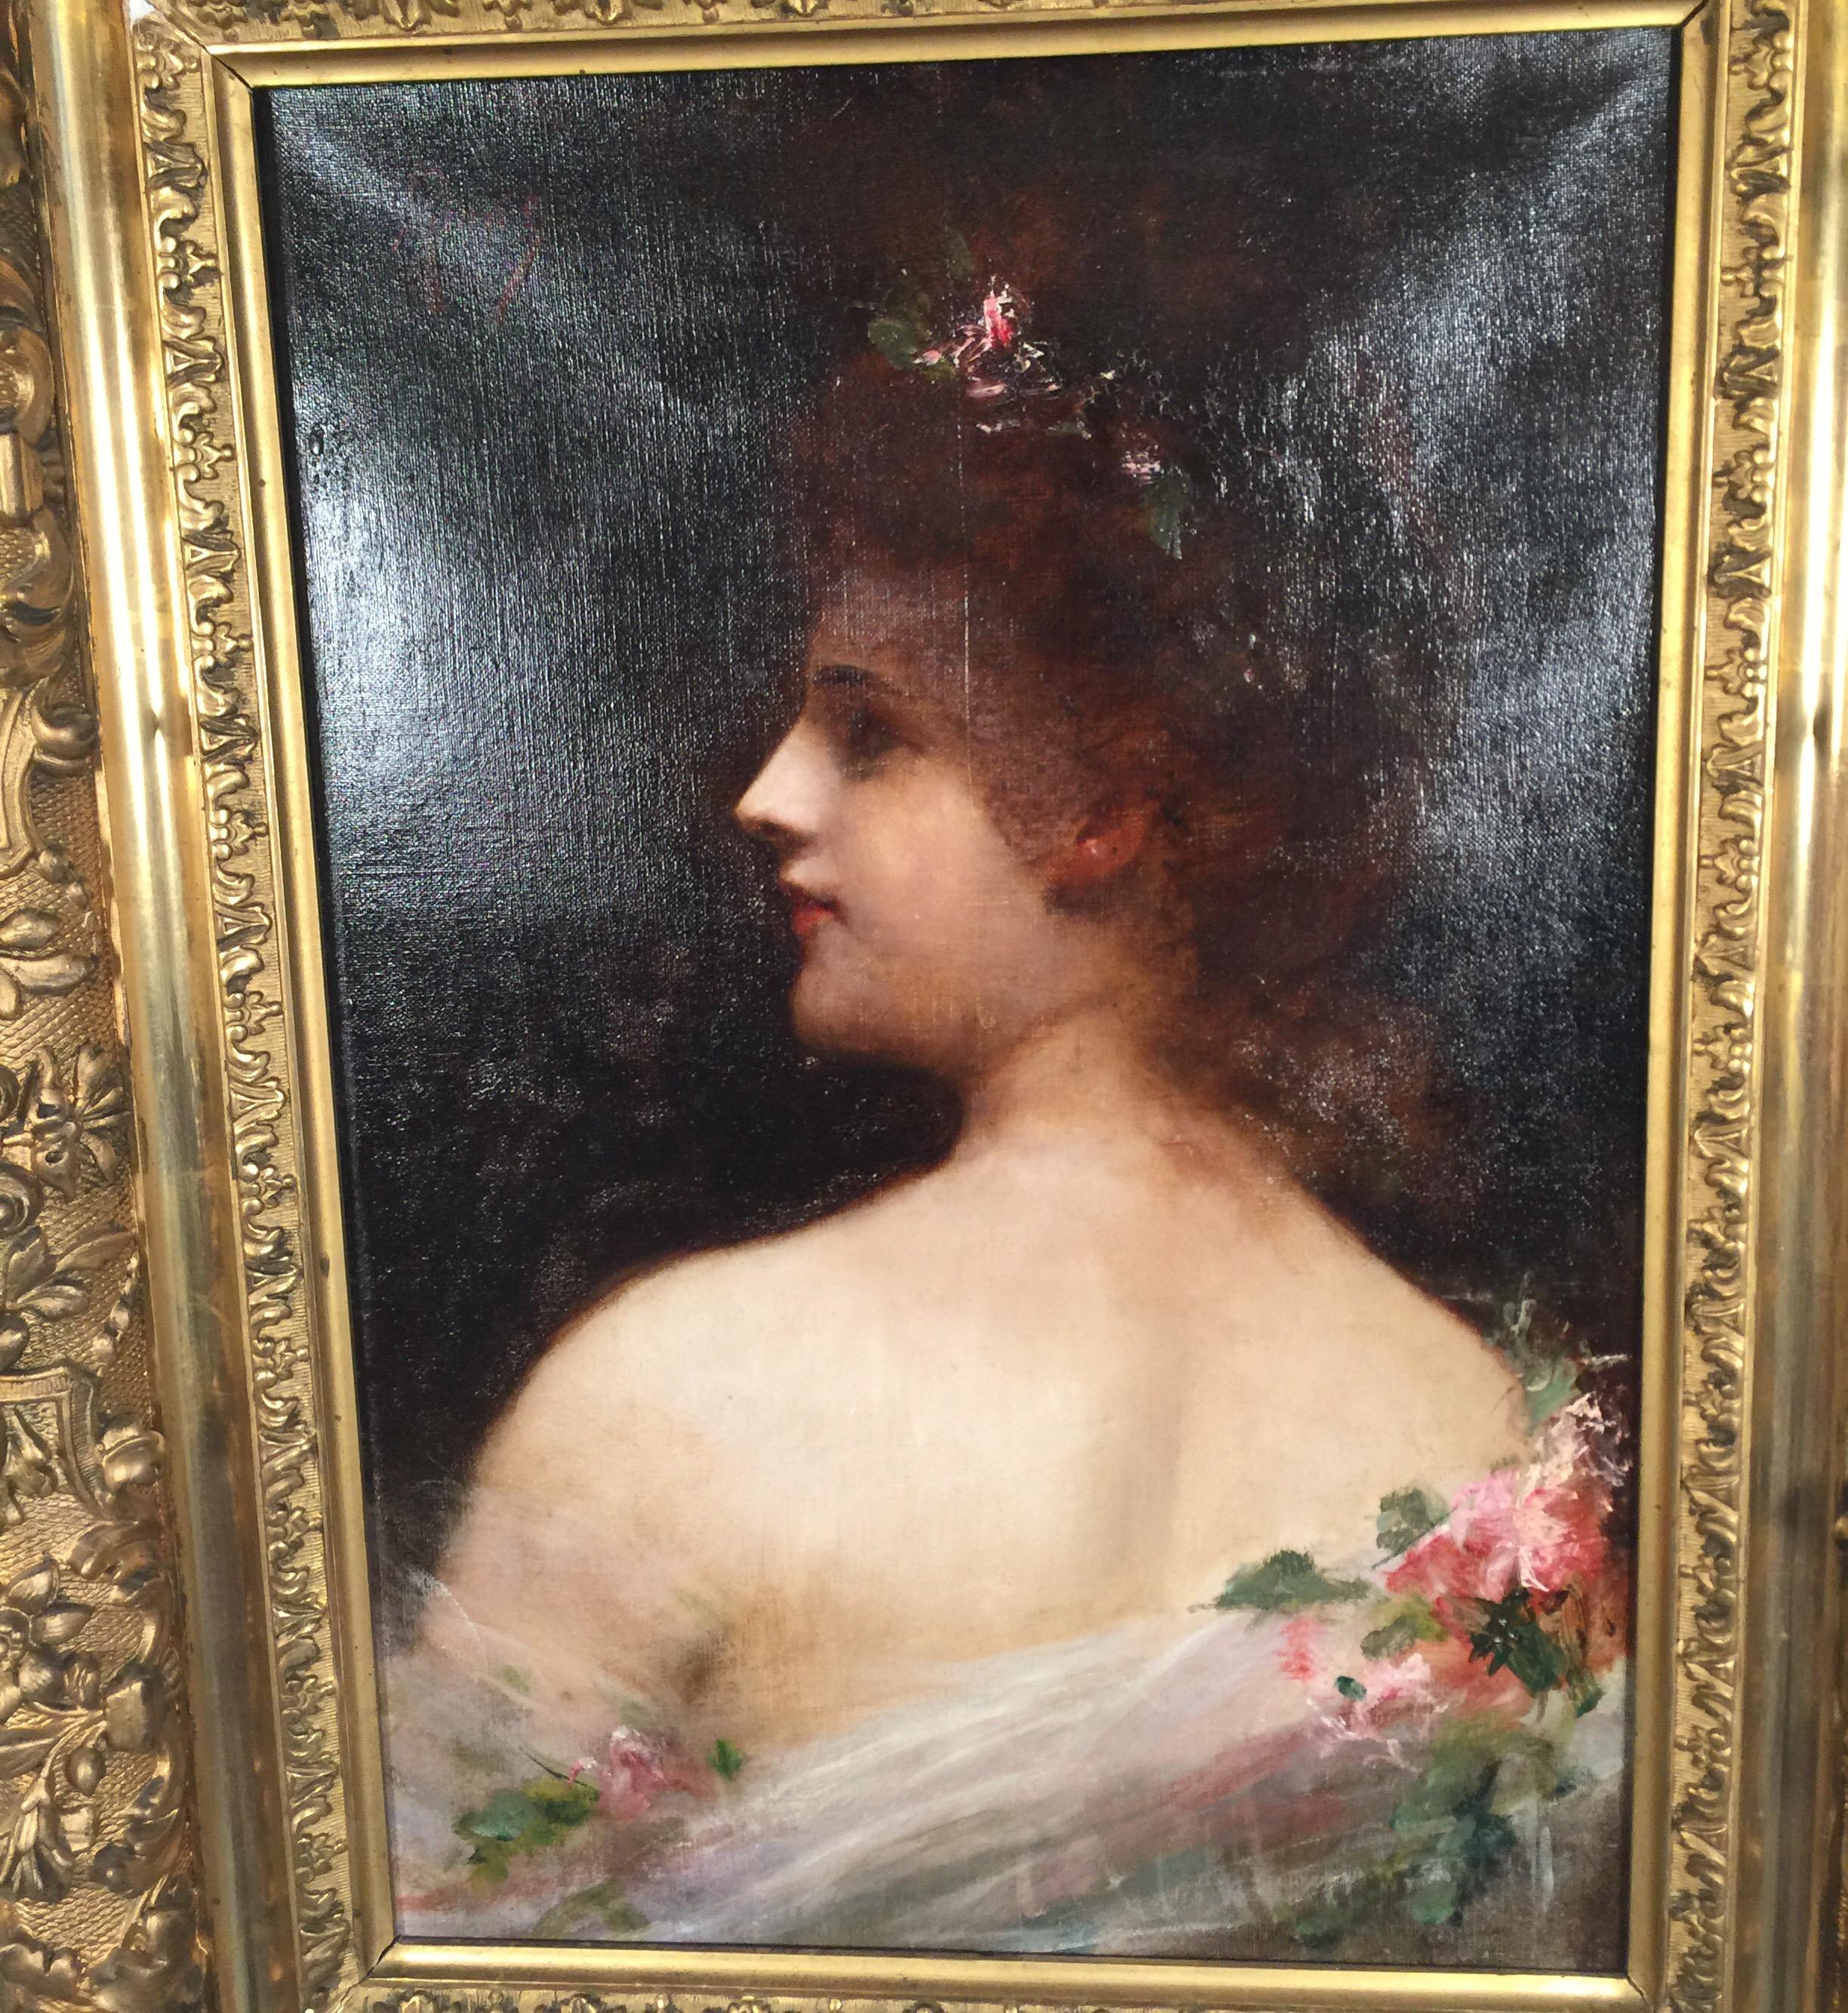 Portrait à l'huile sur toile d'une dame de l'aristocratie espagnole. La peinture d'une jeune femme de profil sur un fond sombre, habillée d'une robe de soirée avec des roses roses, signée par l'artiste Riani dans le coin supérieur gauche. Le cadre